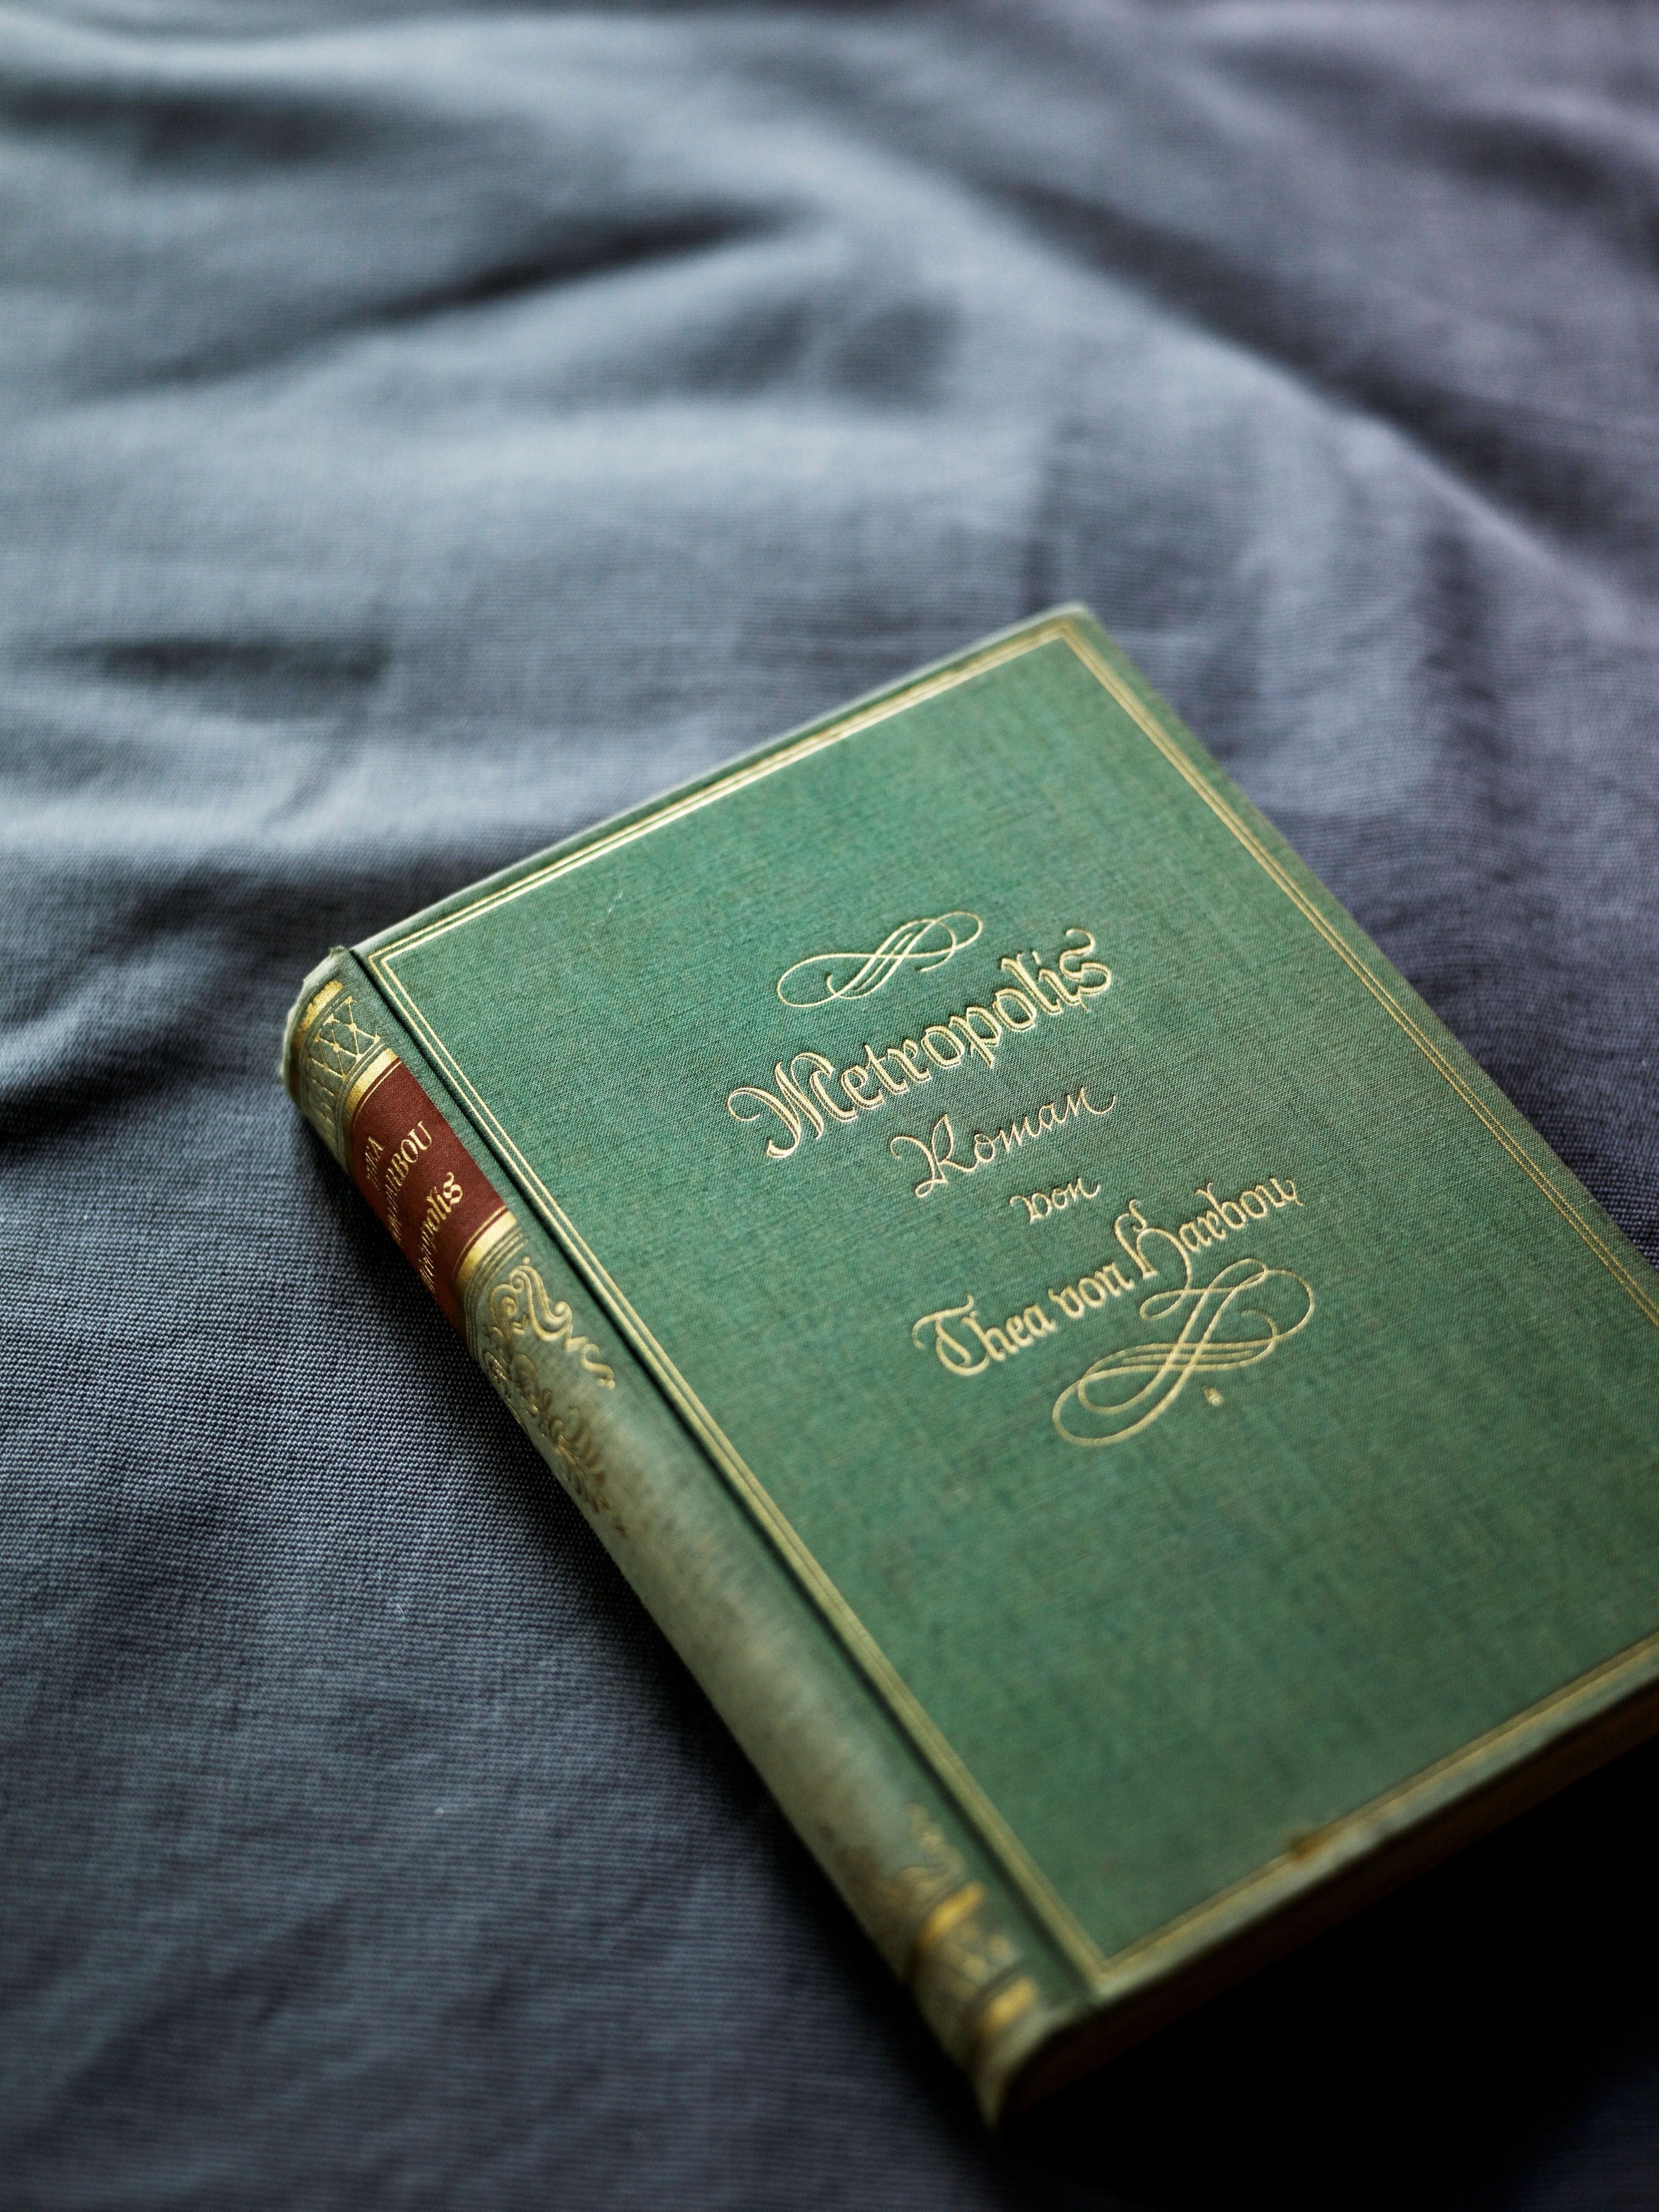 La prima edizione del romanzo di Thea von Harbou, Metropolis edito nel 1925